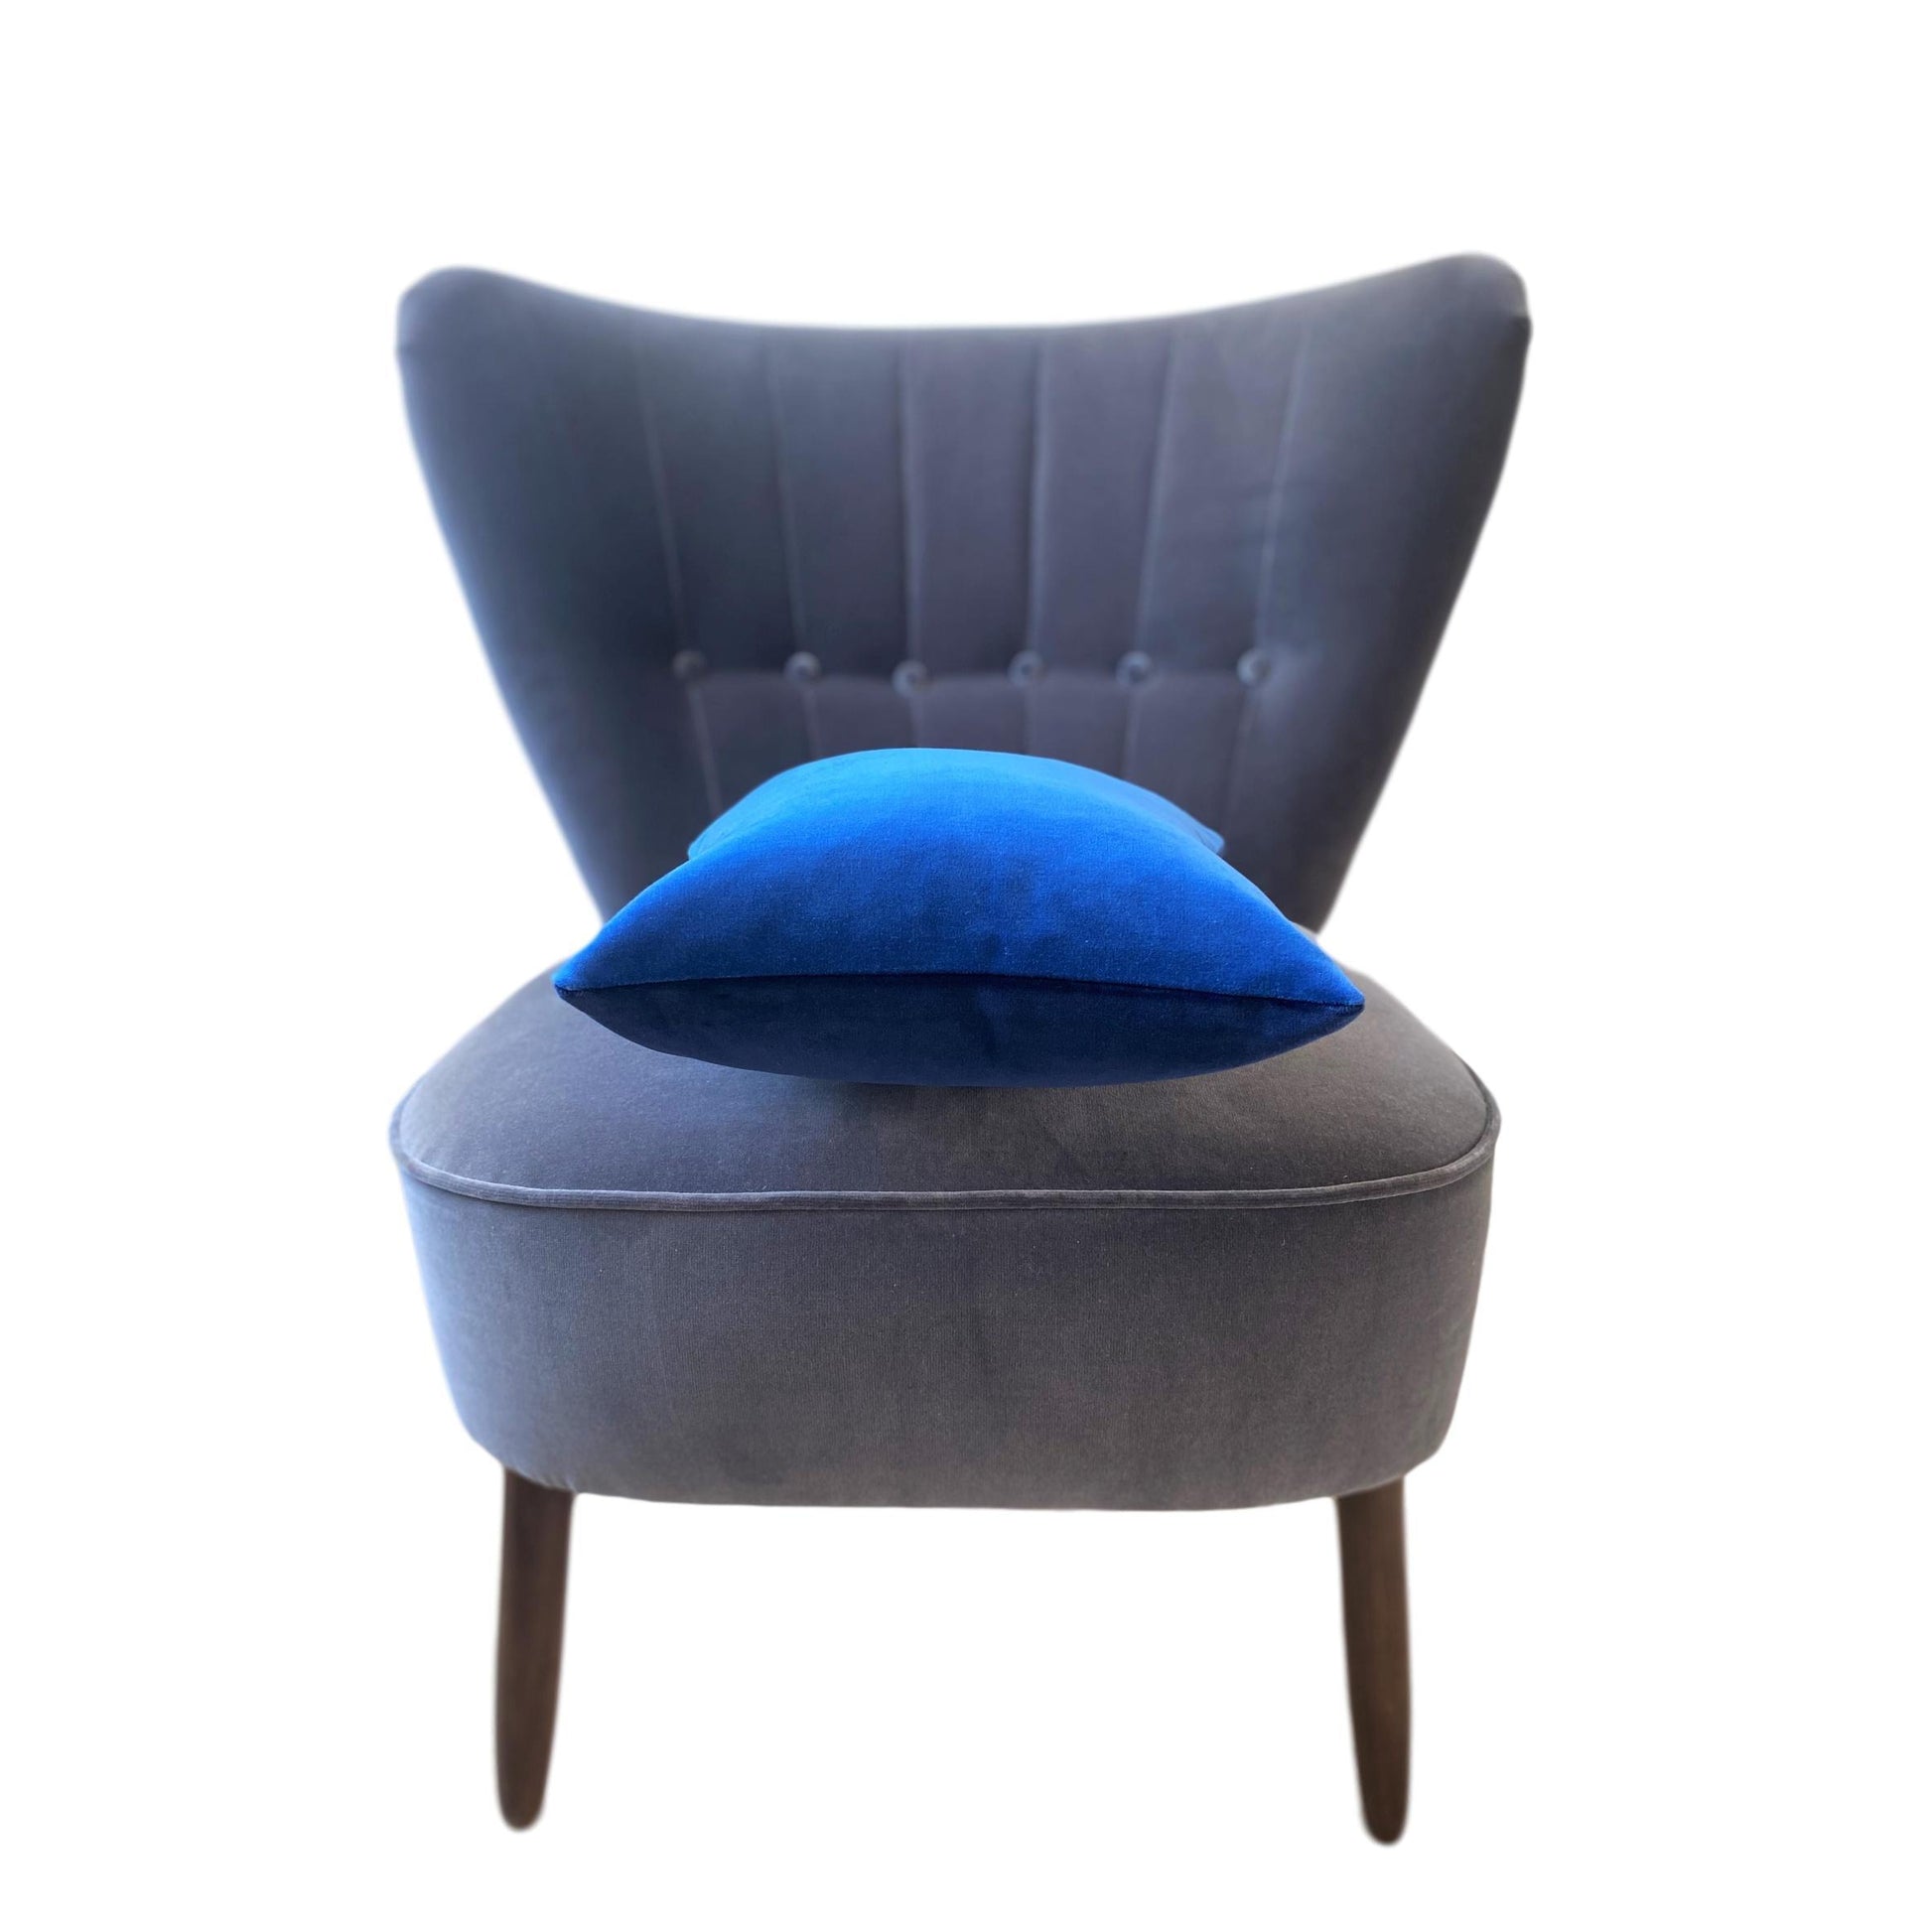 Blue velvet cushion cover